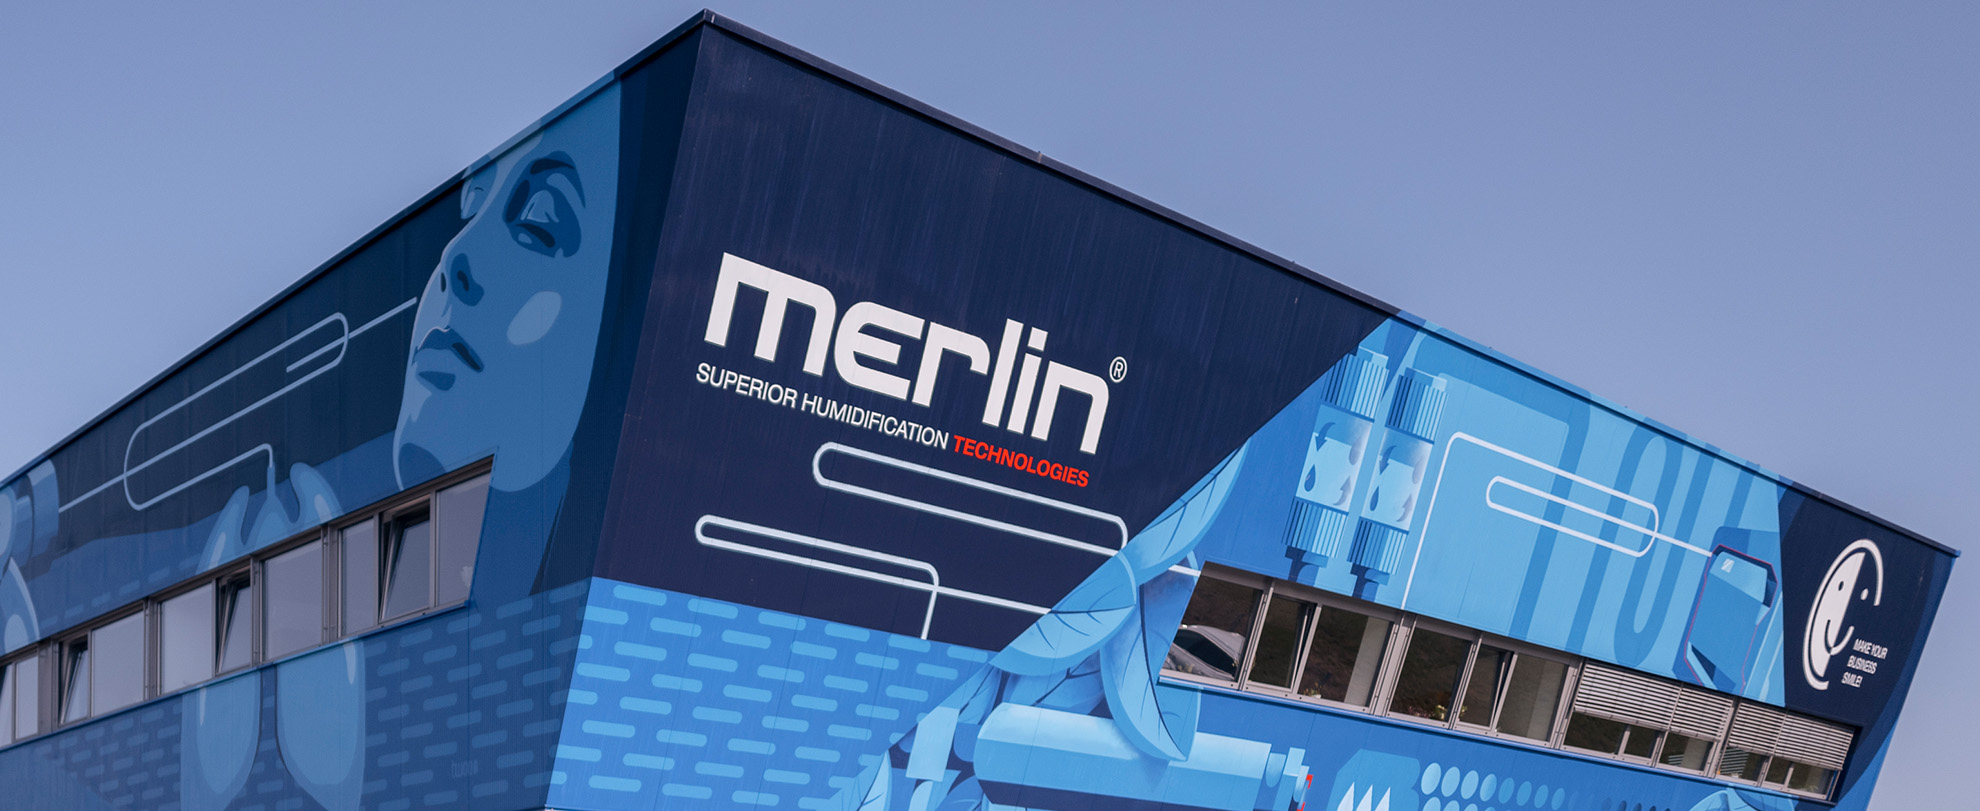 Fassadengestaltung unseres Referenzkunden Merlin Technology GmbH